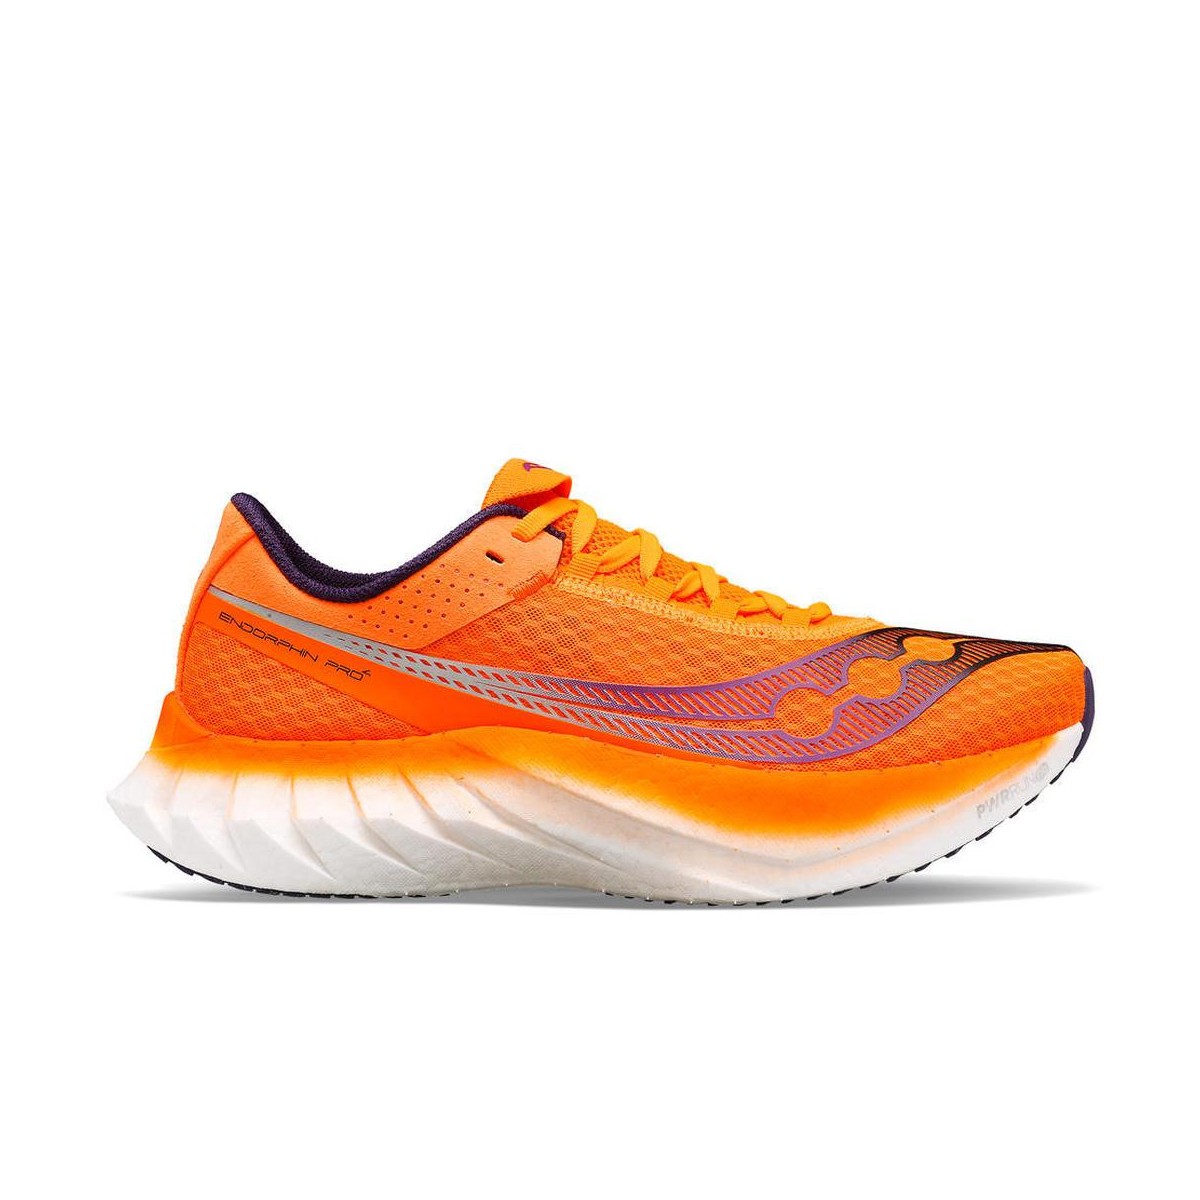 Schuhe Saucony Endorphin Pro 4 Orange Weiß SS24, Größe 44 - EUR